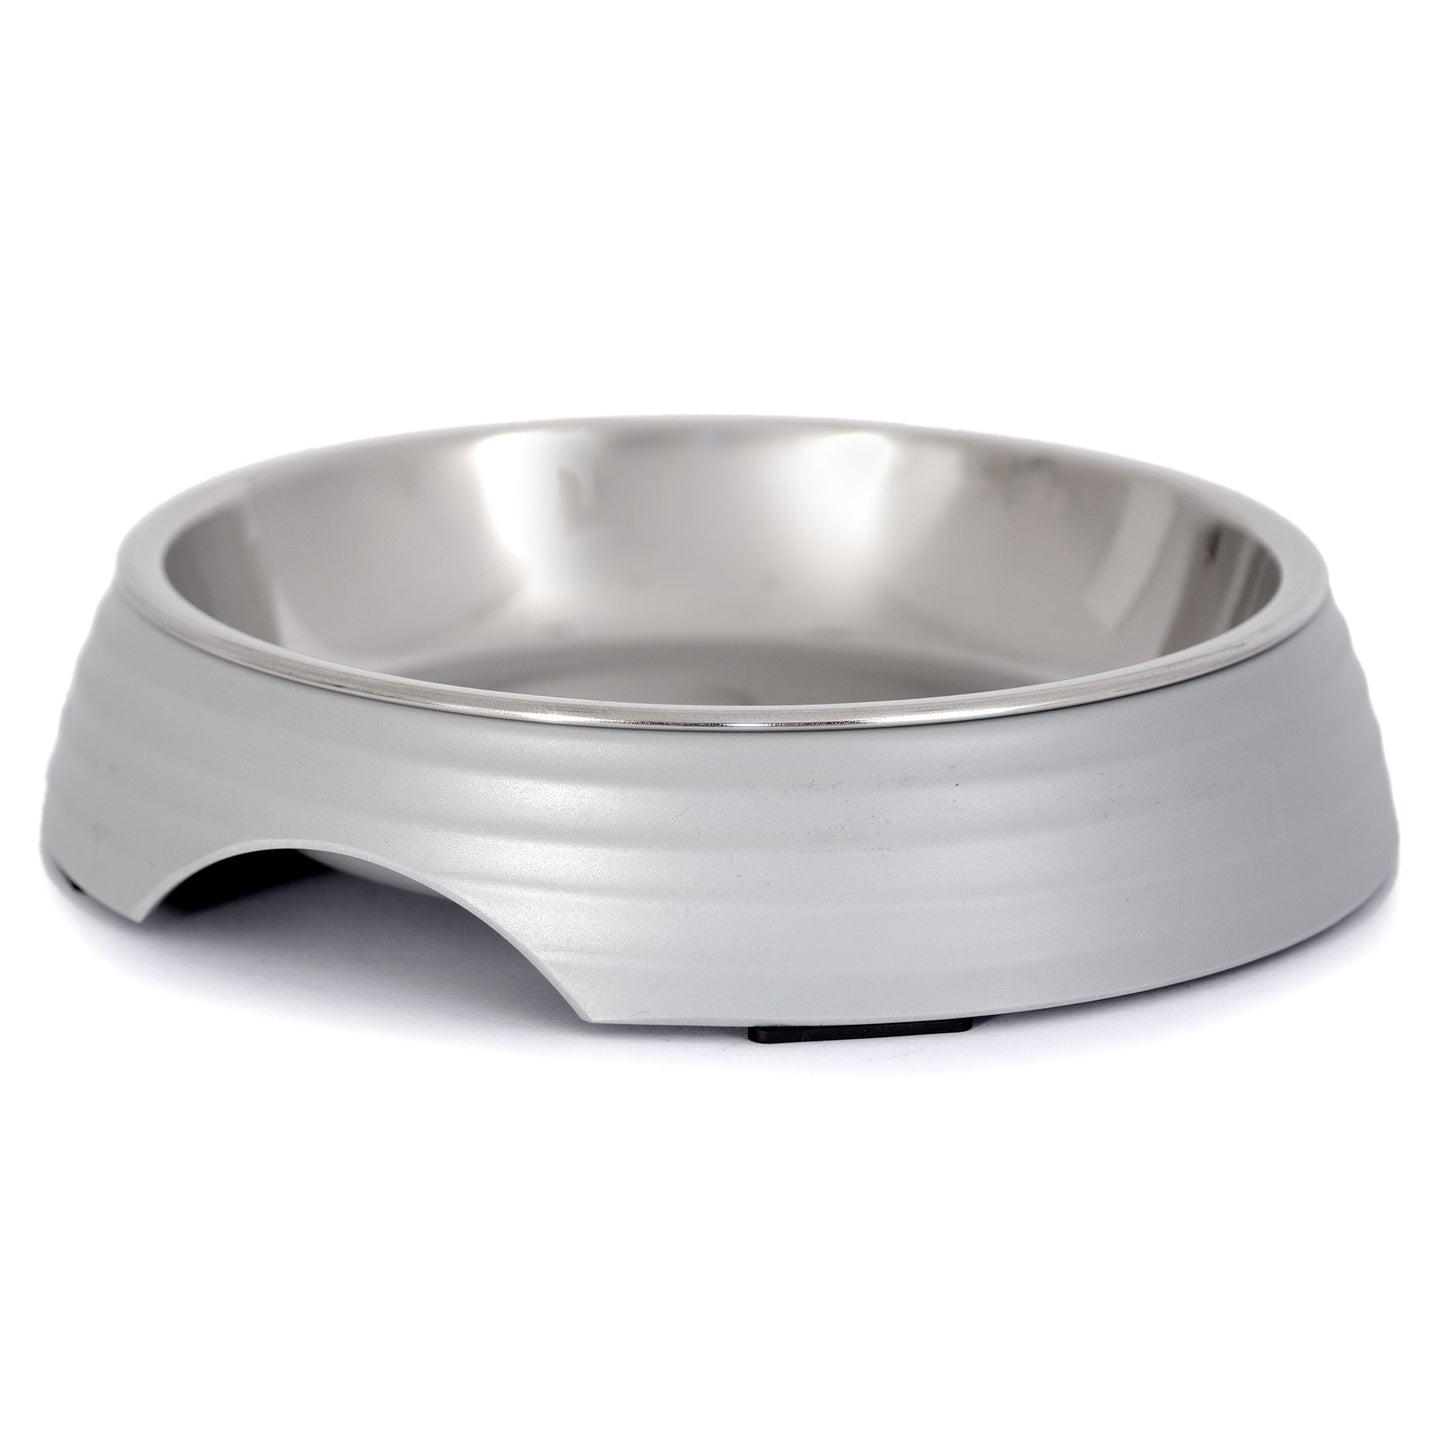 Dogman Melamine bowl Amy, Grey - Different sizes